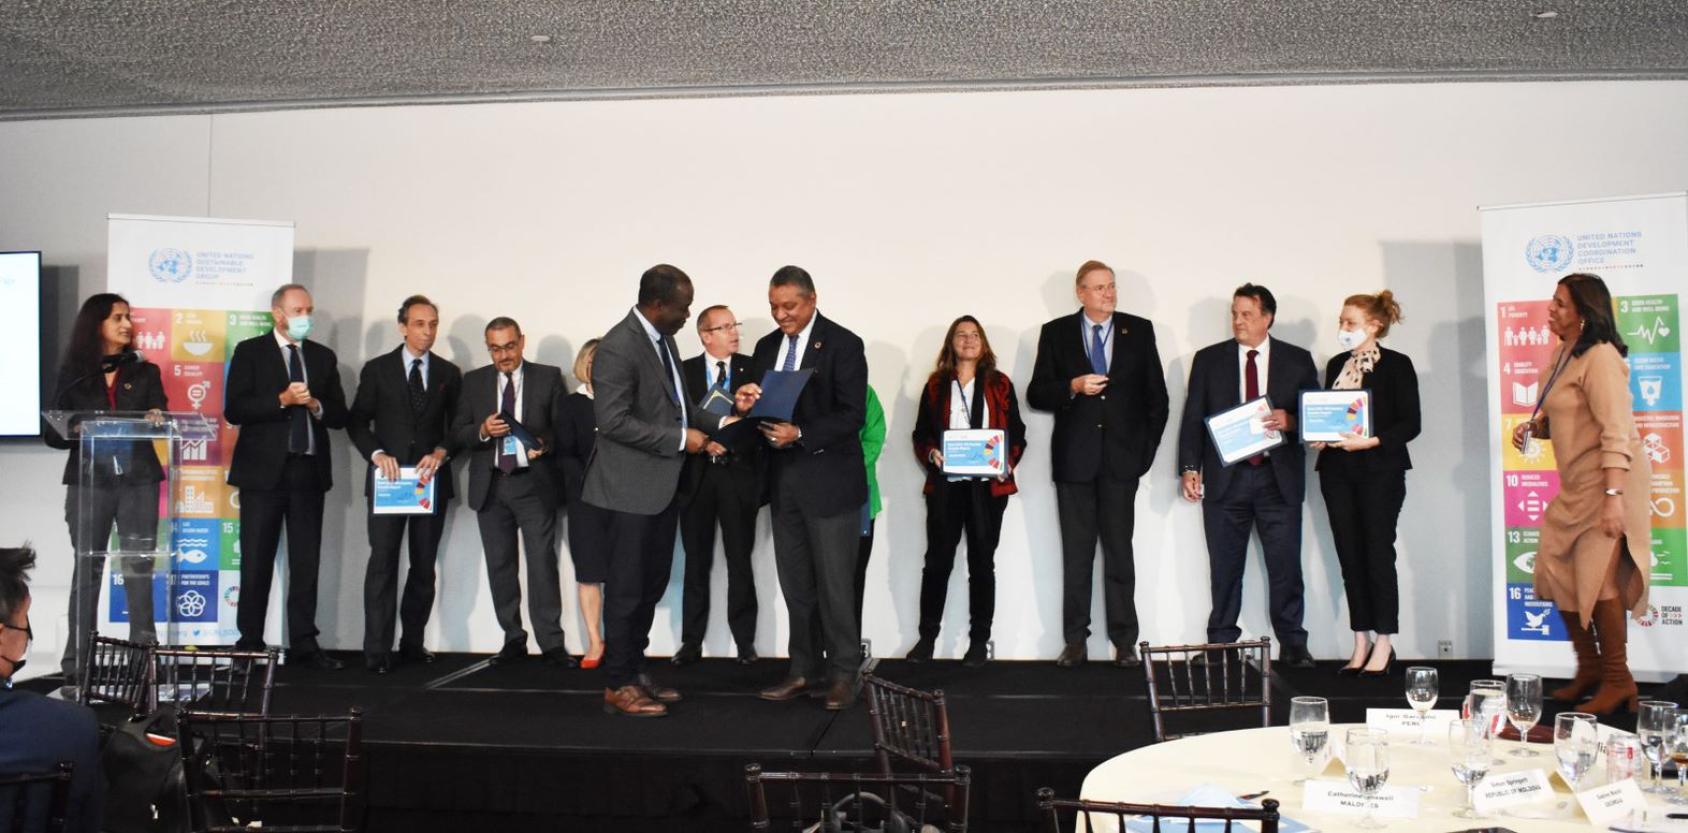 Plusieurs hauts dirigeants de l'ONU, femmes et hommes, se tiennent debout sur une scène lors de la cérémonie de remise des prix des meilleurs rapports annuels sur les résultats des équipes de pays des Nations Unies.